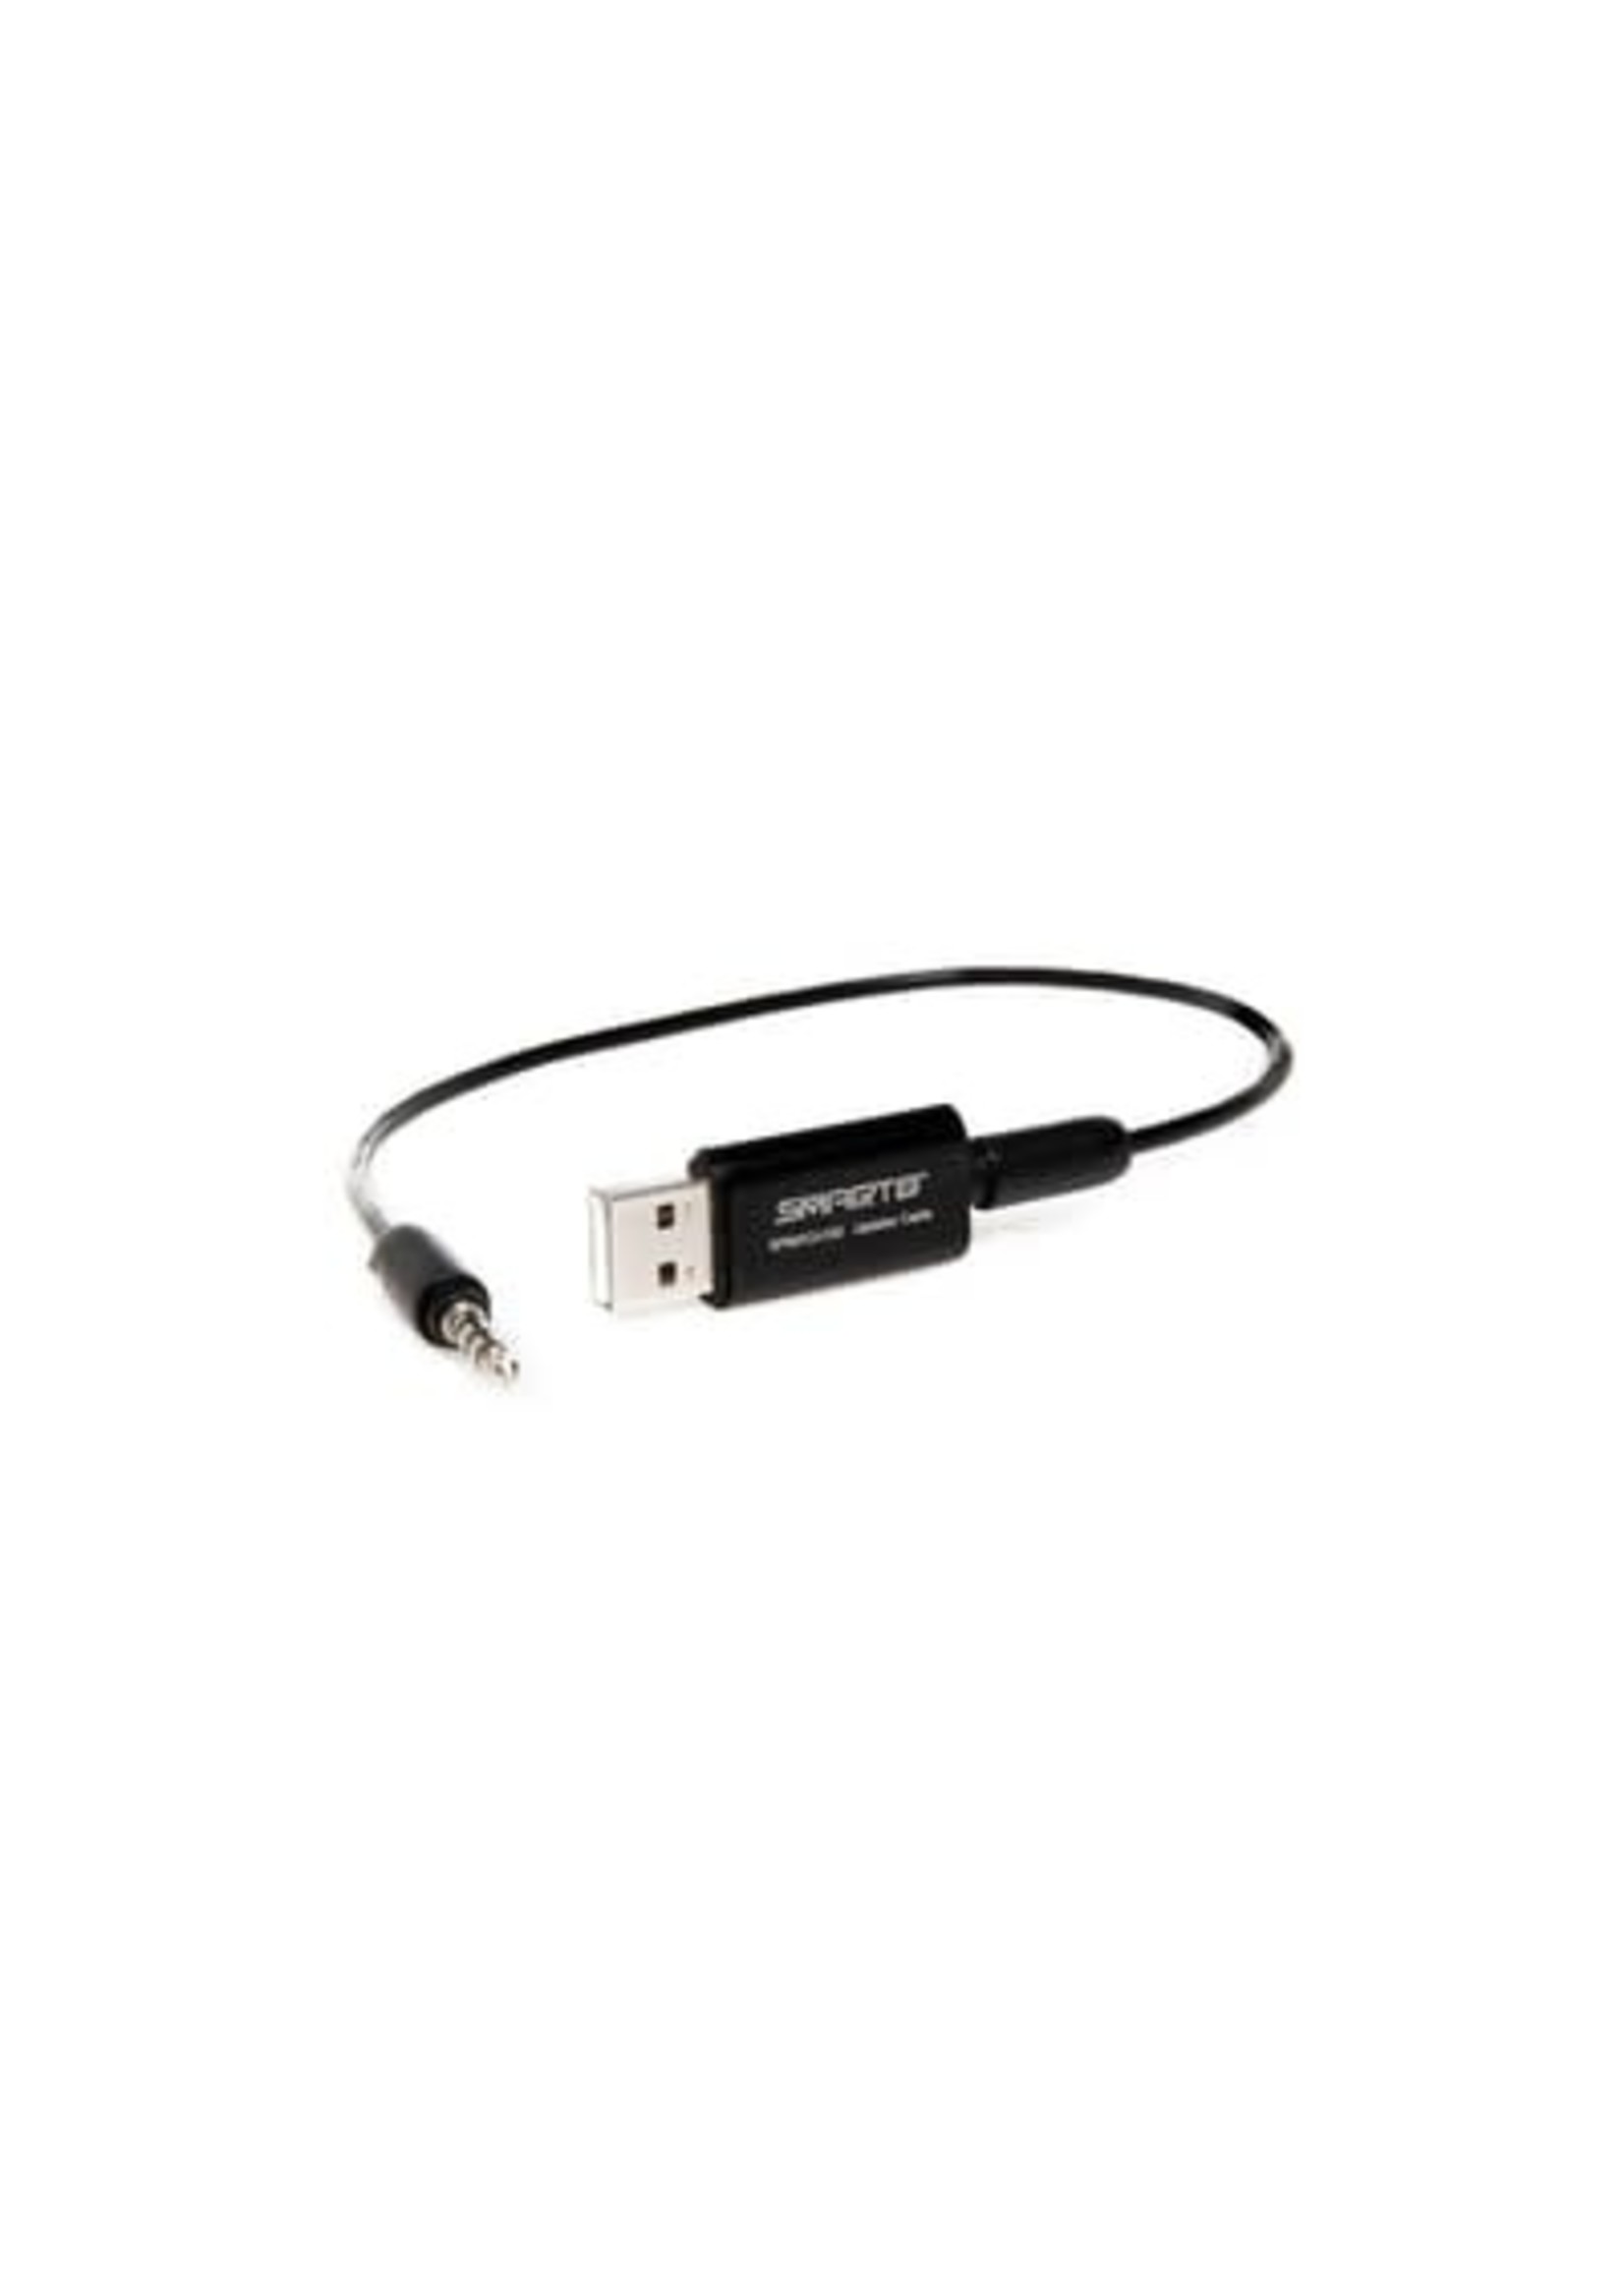 Spektrum SPMXCA100 SPMXCA100 Spektrum Smart Charger USB Updater Cable / Link